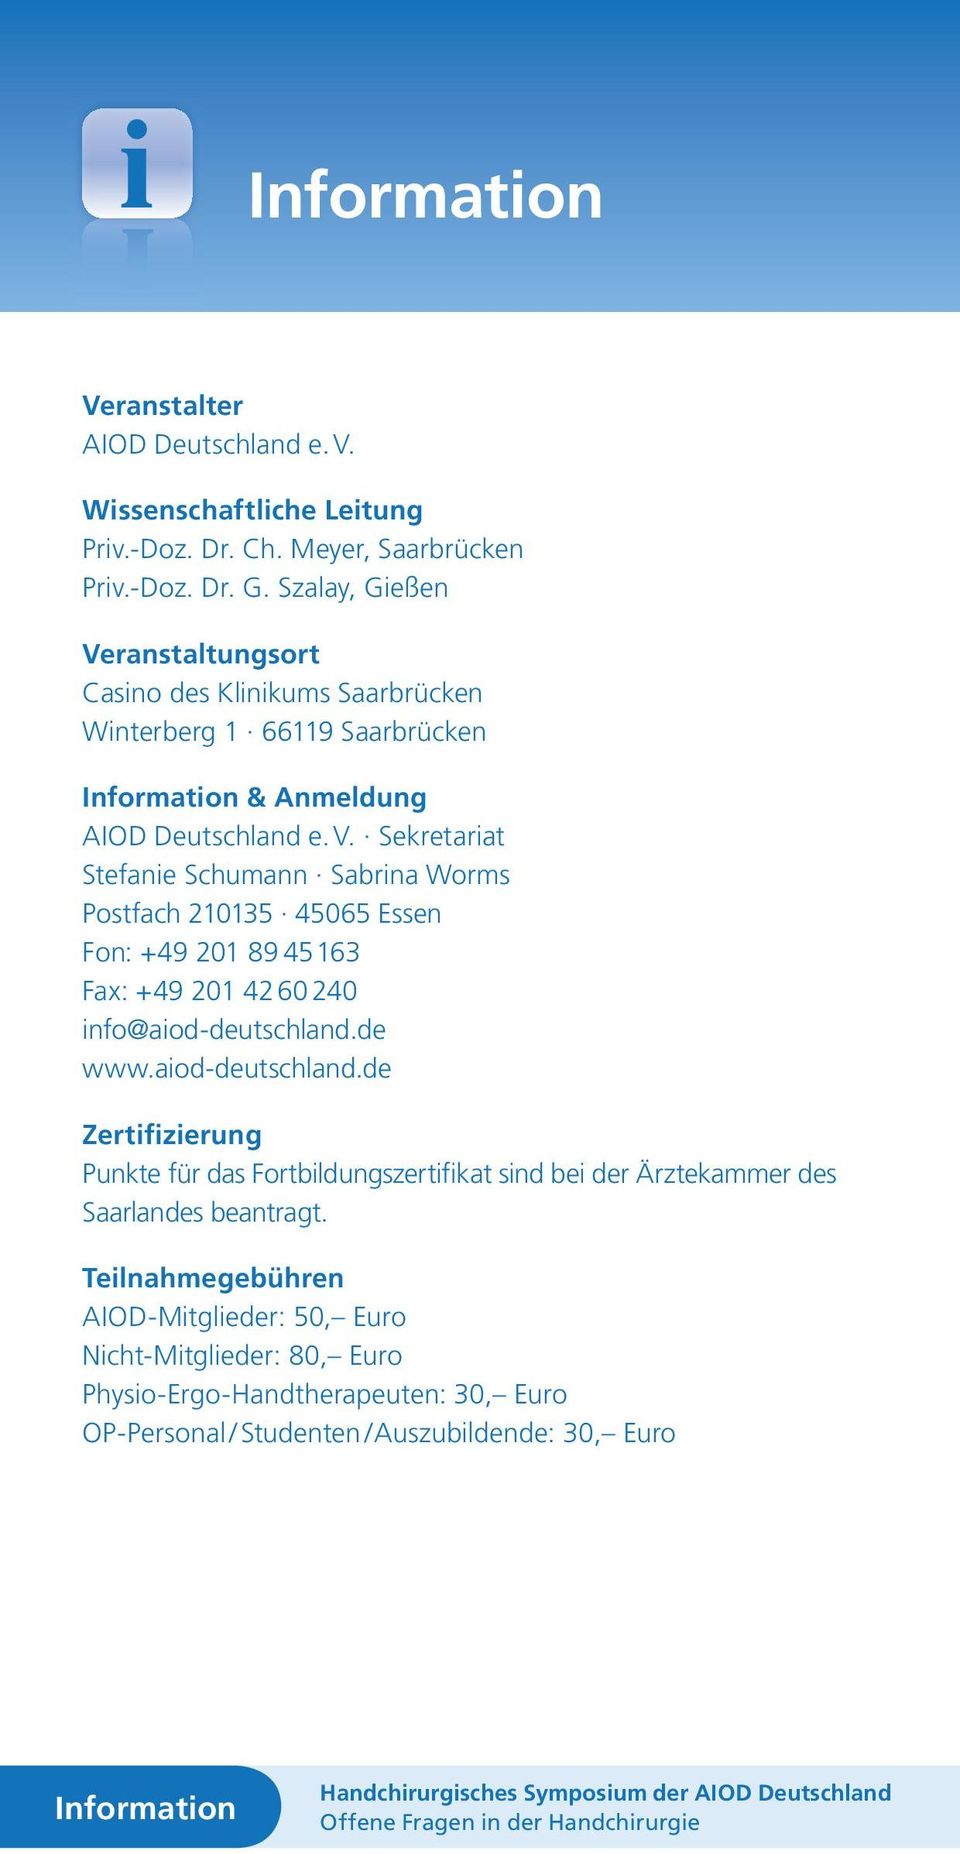 de www.aiod-deutschland.de Zertifizierung Punkte für das Fortbildungszertifikat sind bei der Ärztekammer des Saarlandes beantragt.